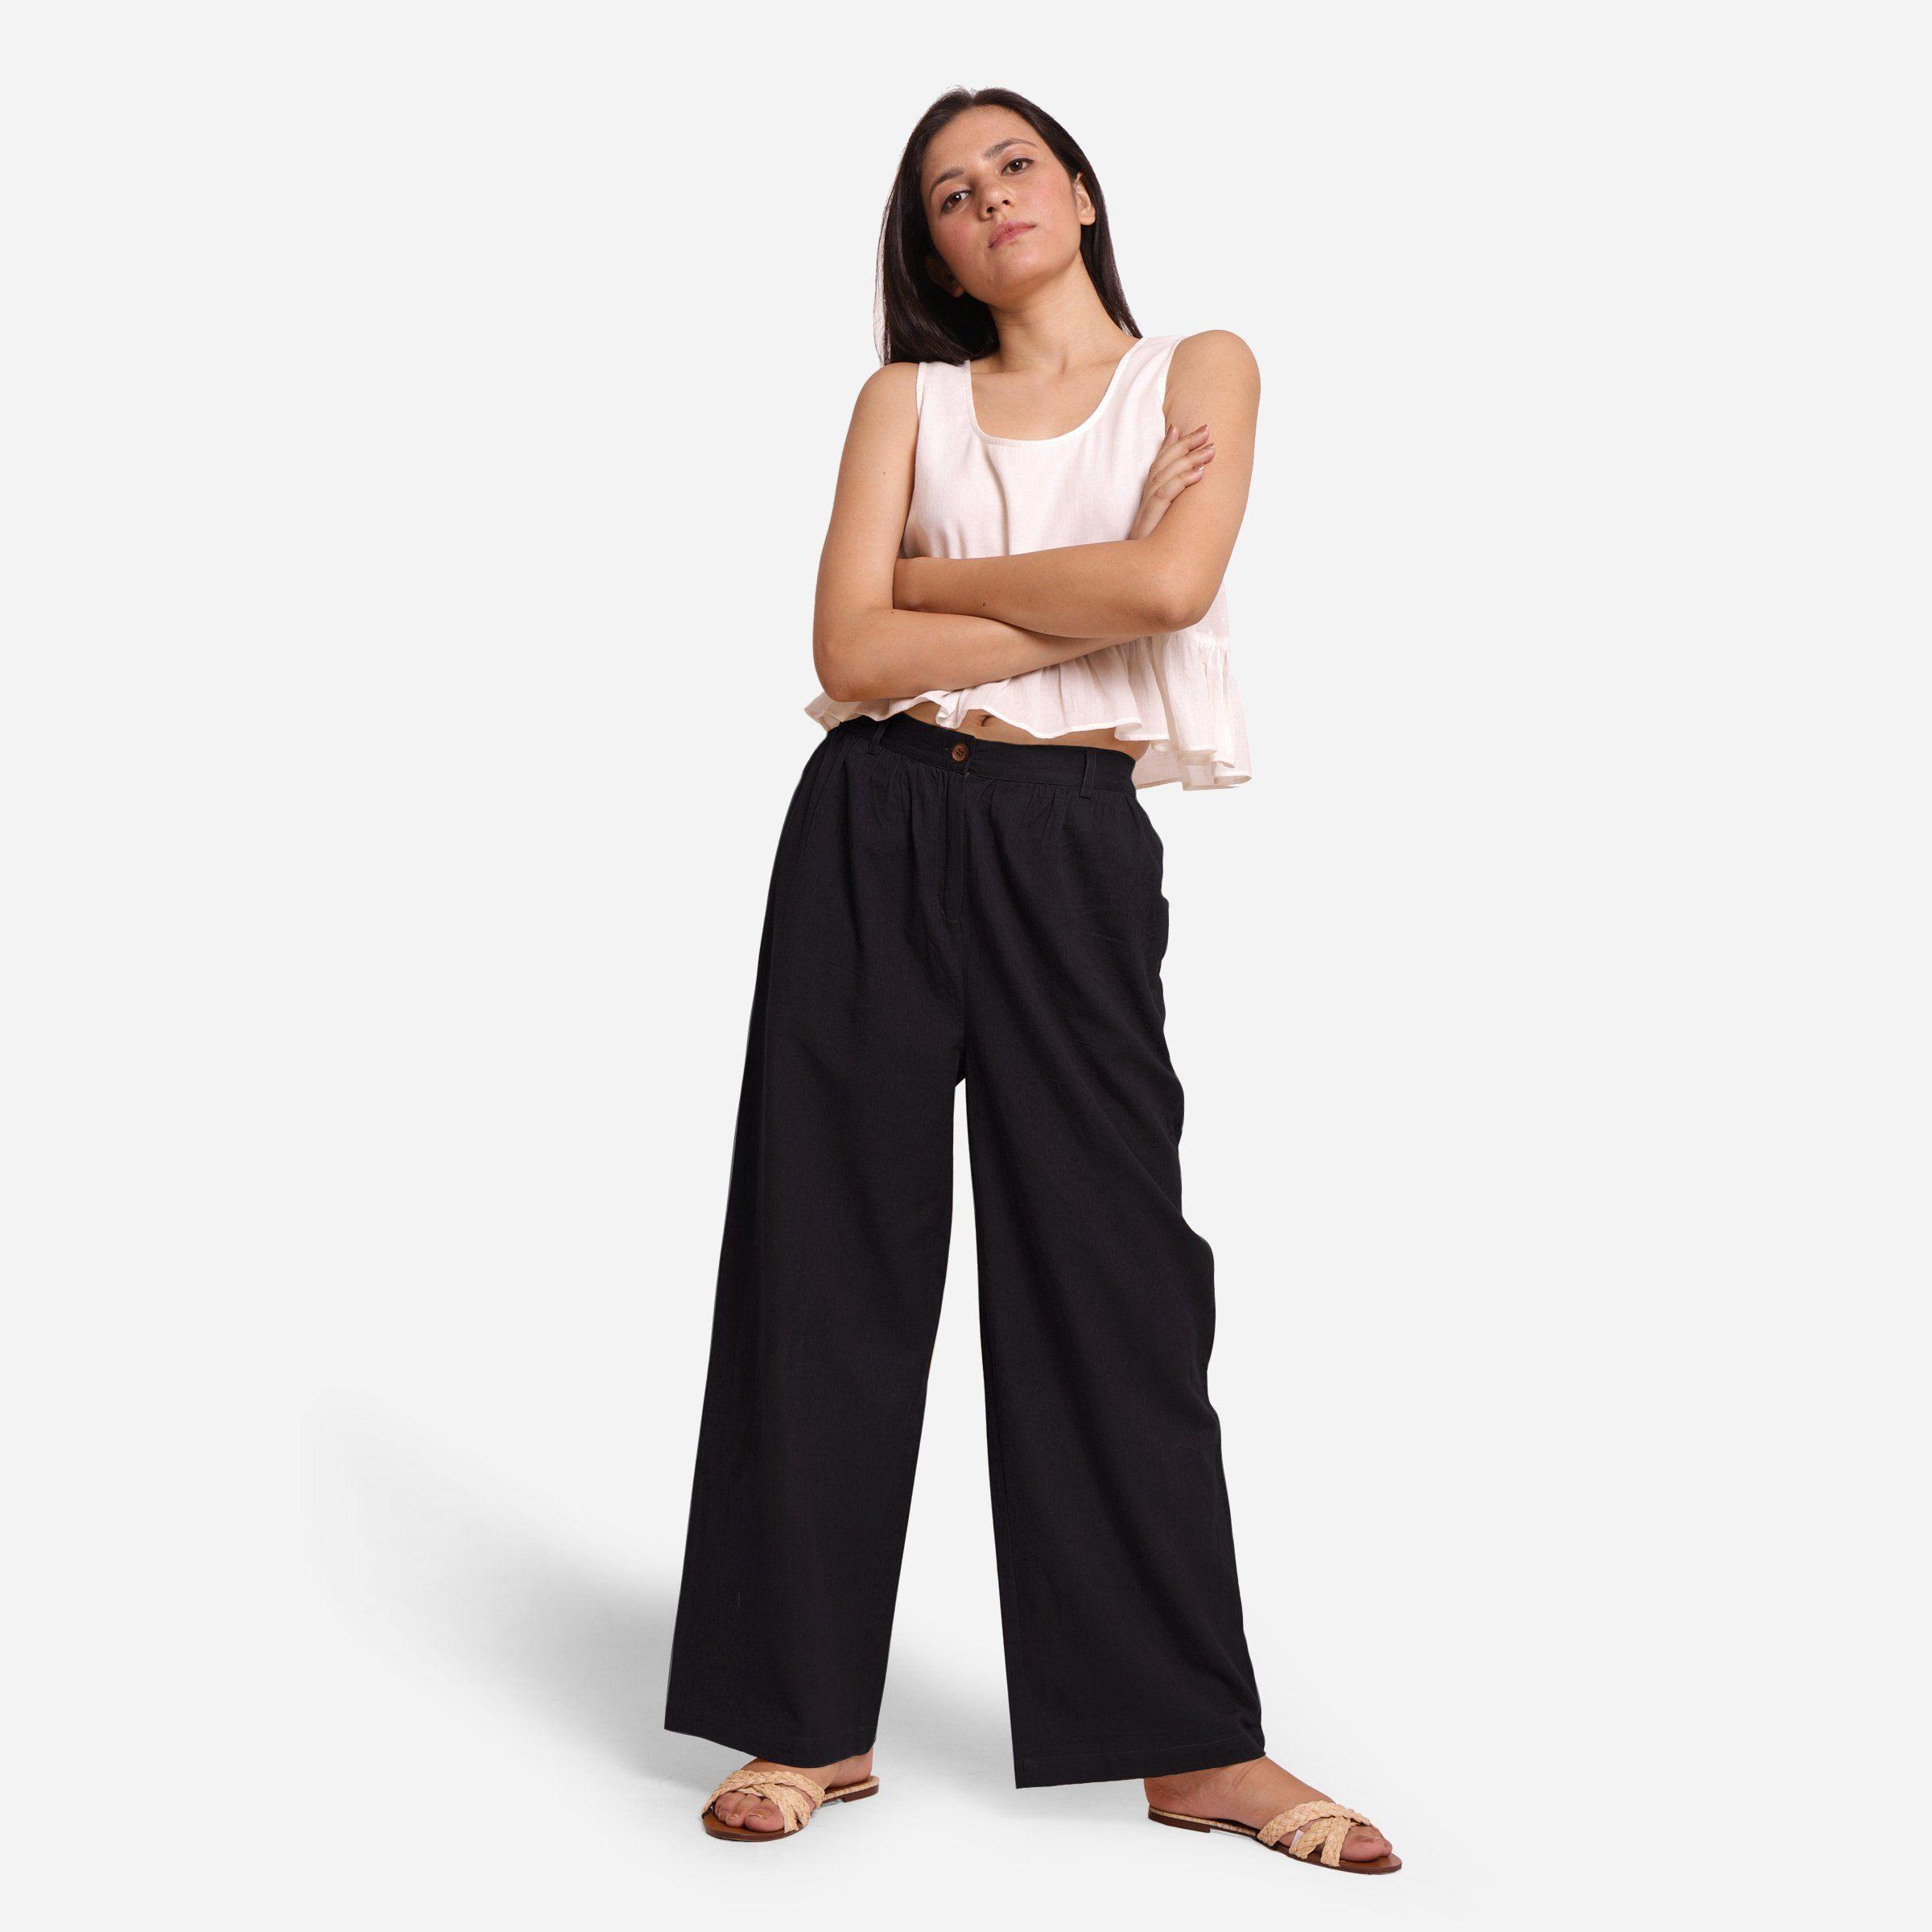 Buy Black Linen Elasticated Straight Formal Trouser Online